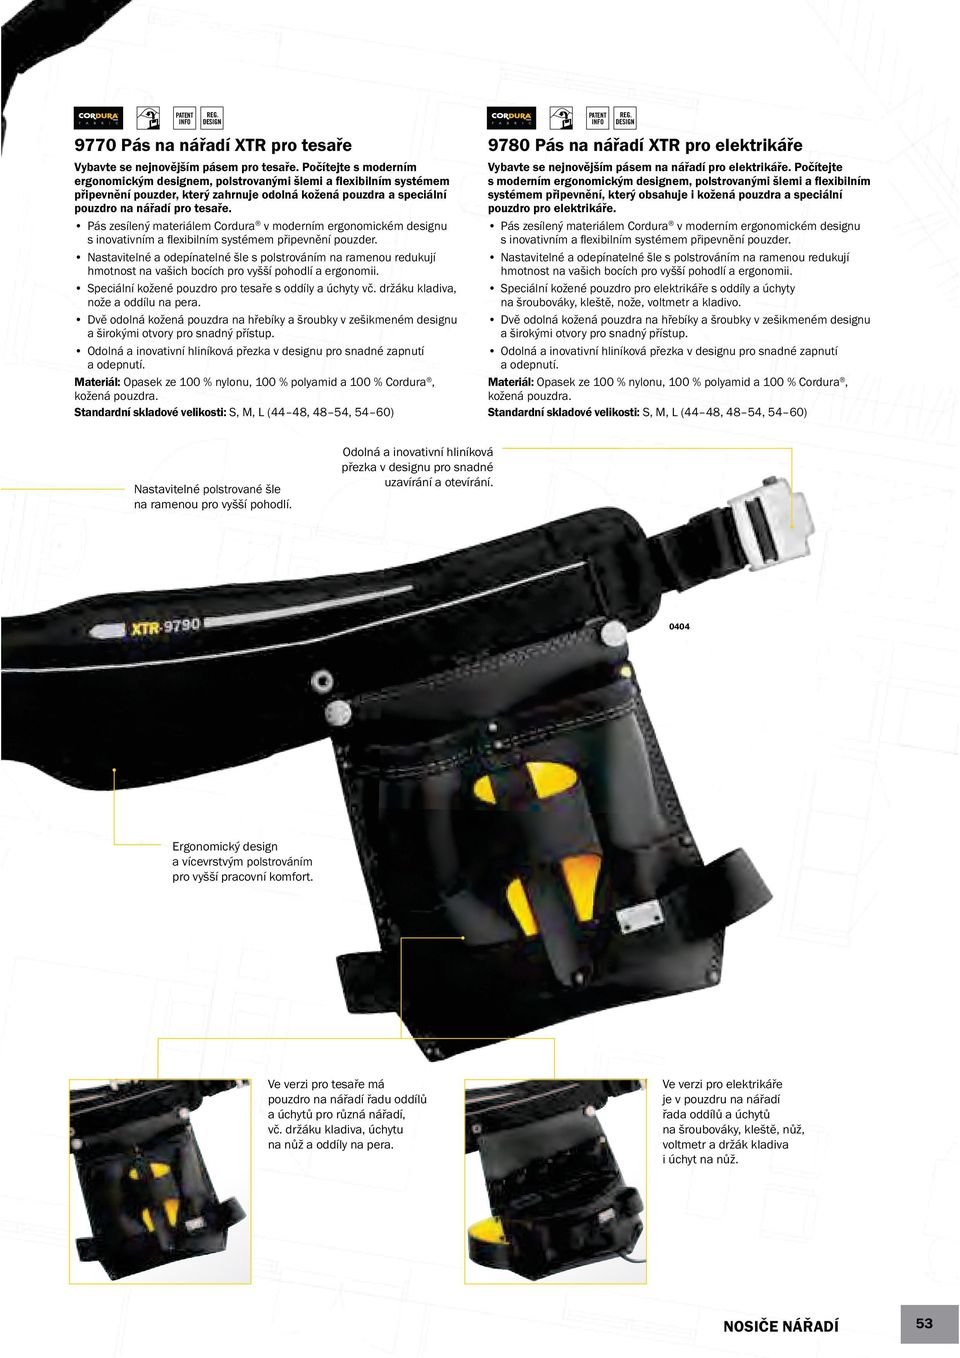 Pás zesílený materiálem Cordura v moderním ergonomickém designu s inovativním a ﬂexibilním systémem připevnění pouzder.